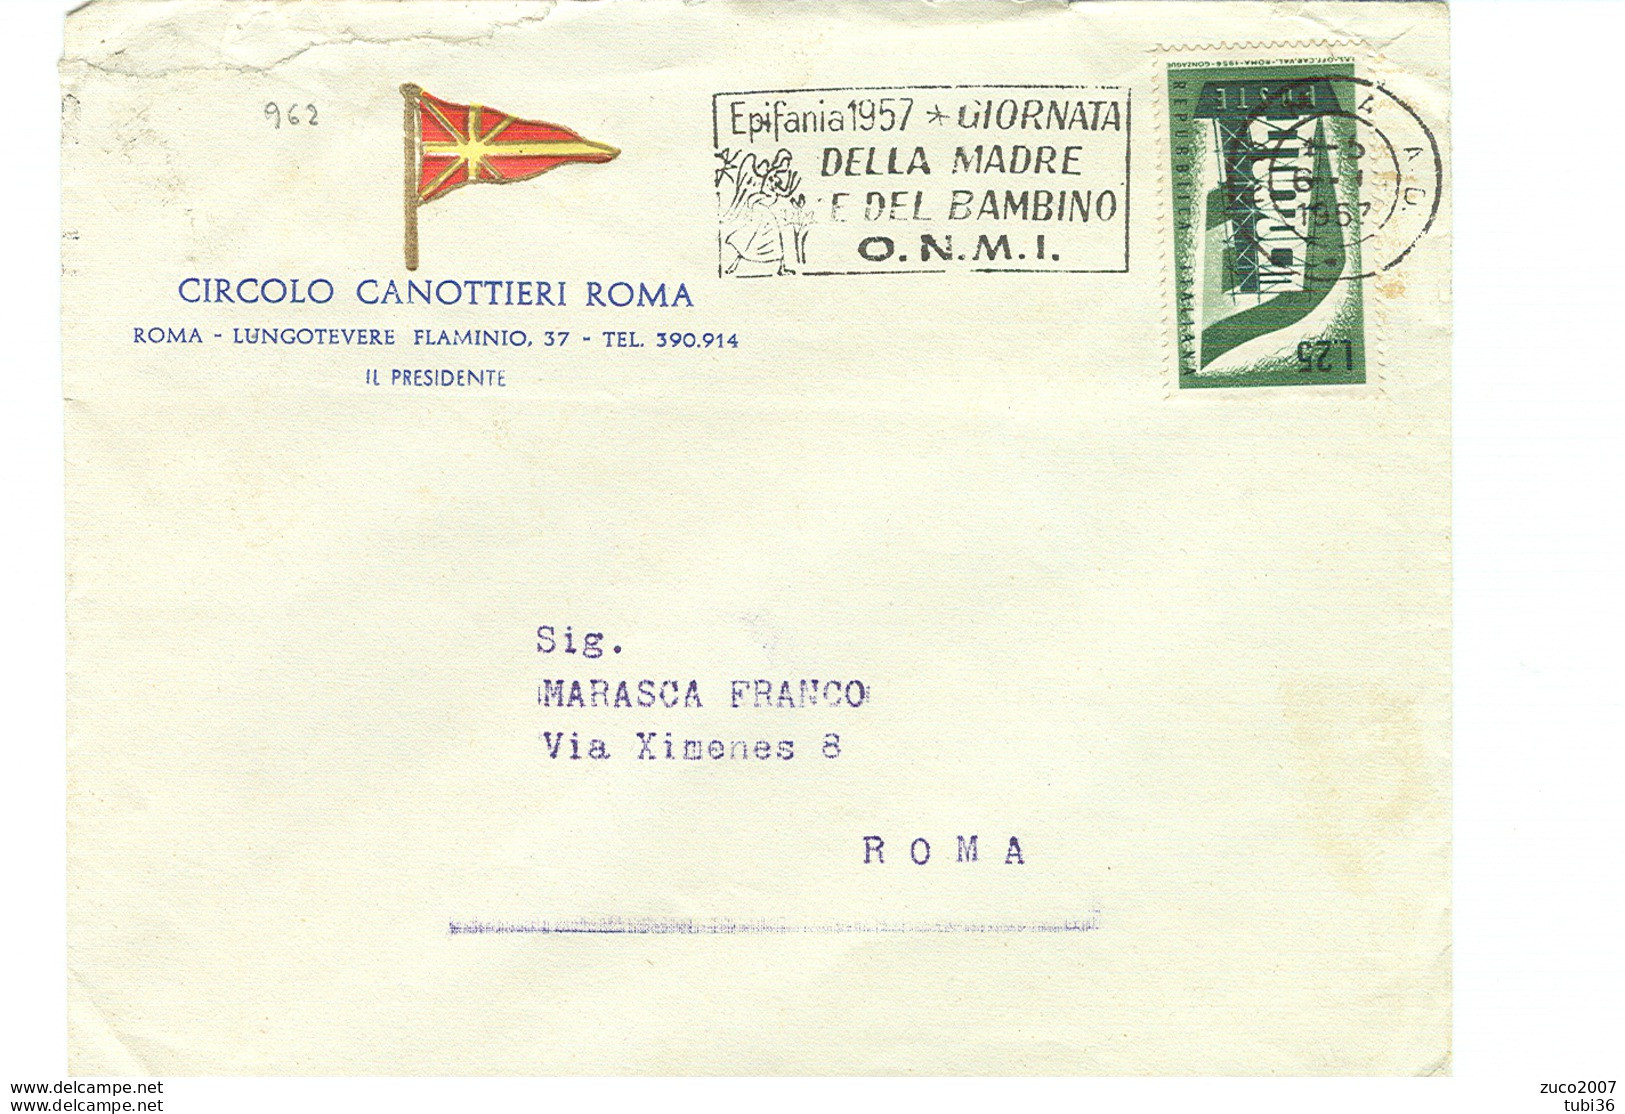 EPIFANIA 1957, GIORNATA DELLA MADRE E DEL BAMBINO- O.N.M.I.- TIMBRO POSTE ROMA TARGHETTA,1957,CIRCOLO CANOTTIERI,ROMA, - Moederdag